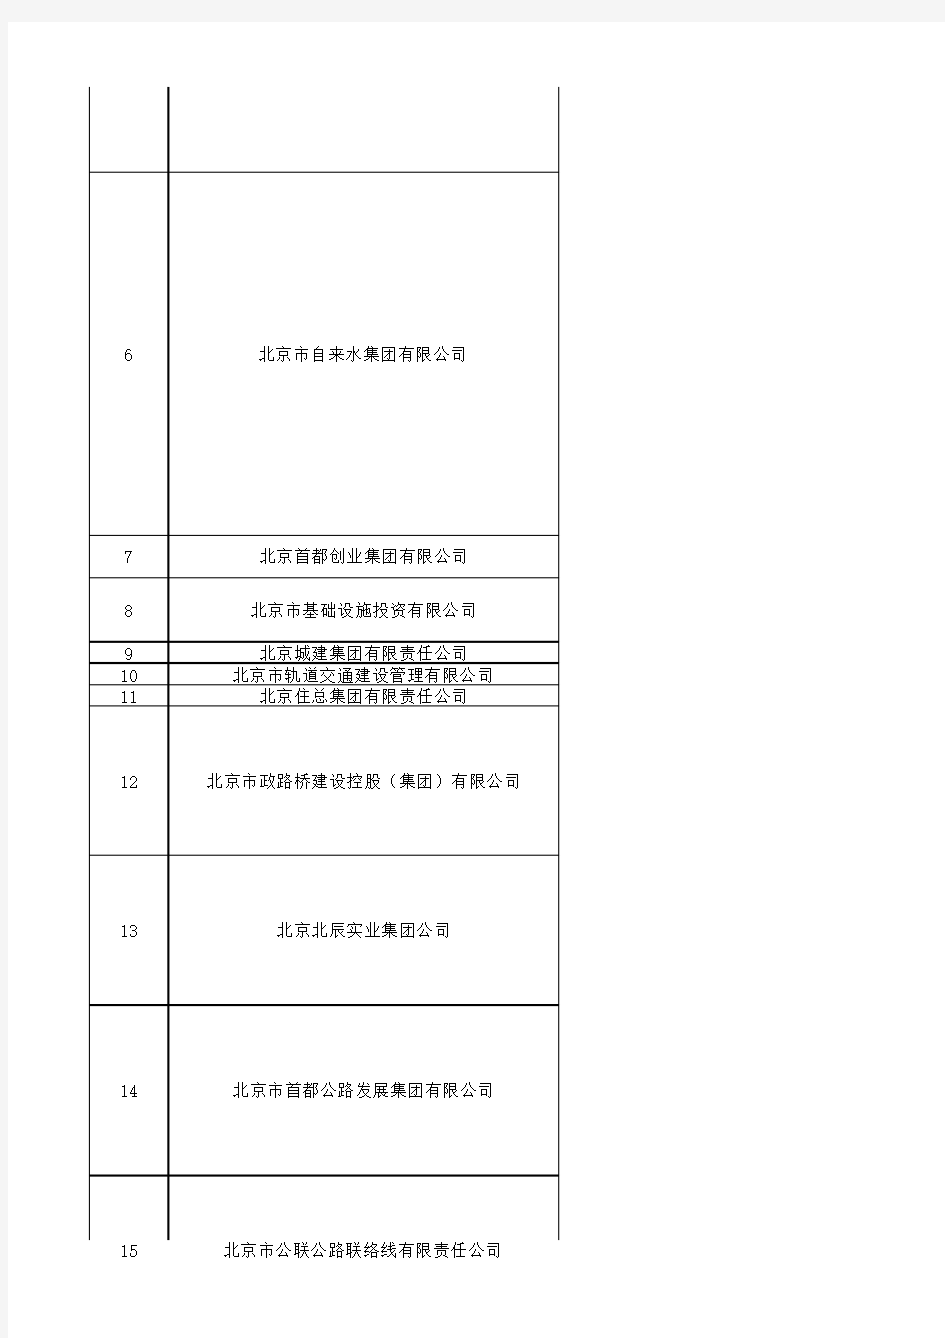 北京市国企名单 国资委下属企业名单(142家)